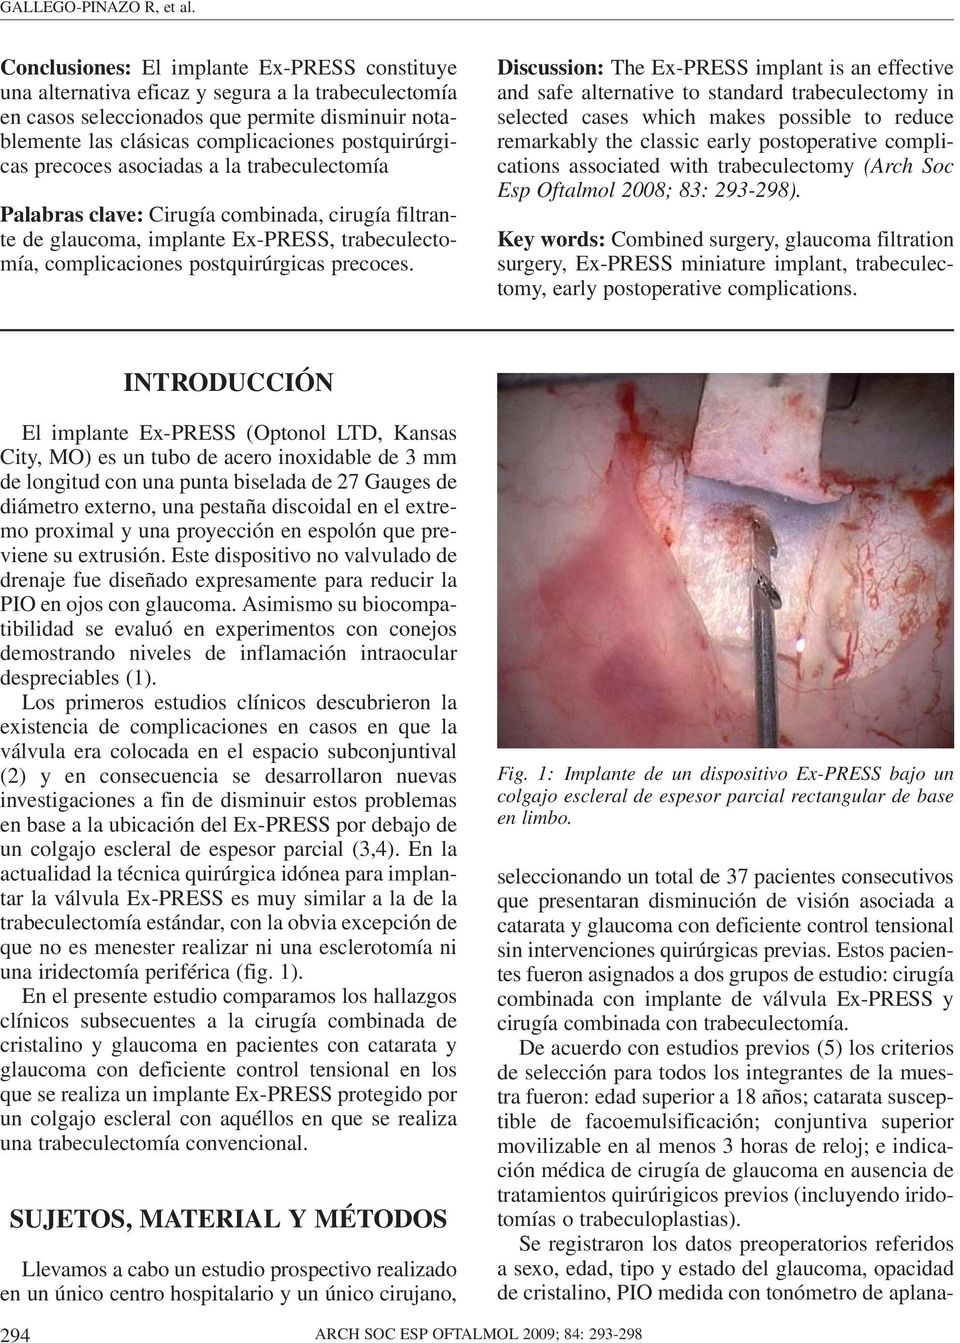 postquirúrgicas precoces asociadas a la trabeculectomía Palabras clave: Cirugía combinada, cirugía filtrante de glaucoma, implante Ex-PRESS, trabeculectomía, complicaciones postquirúrgicas precoces.